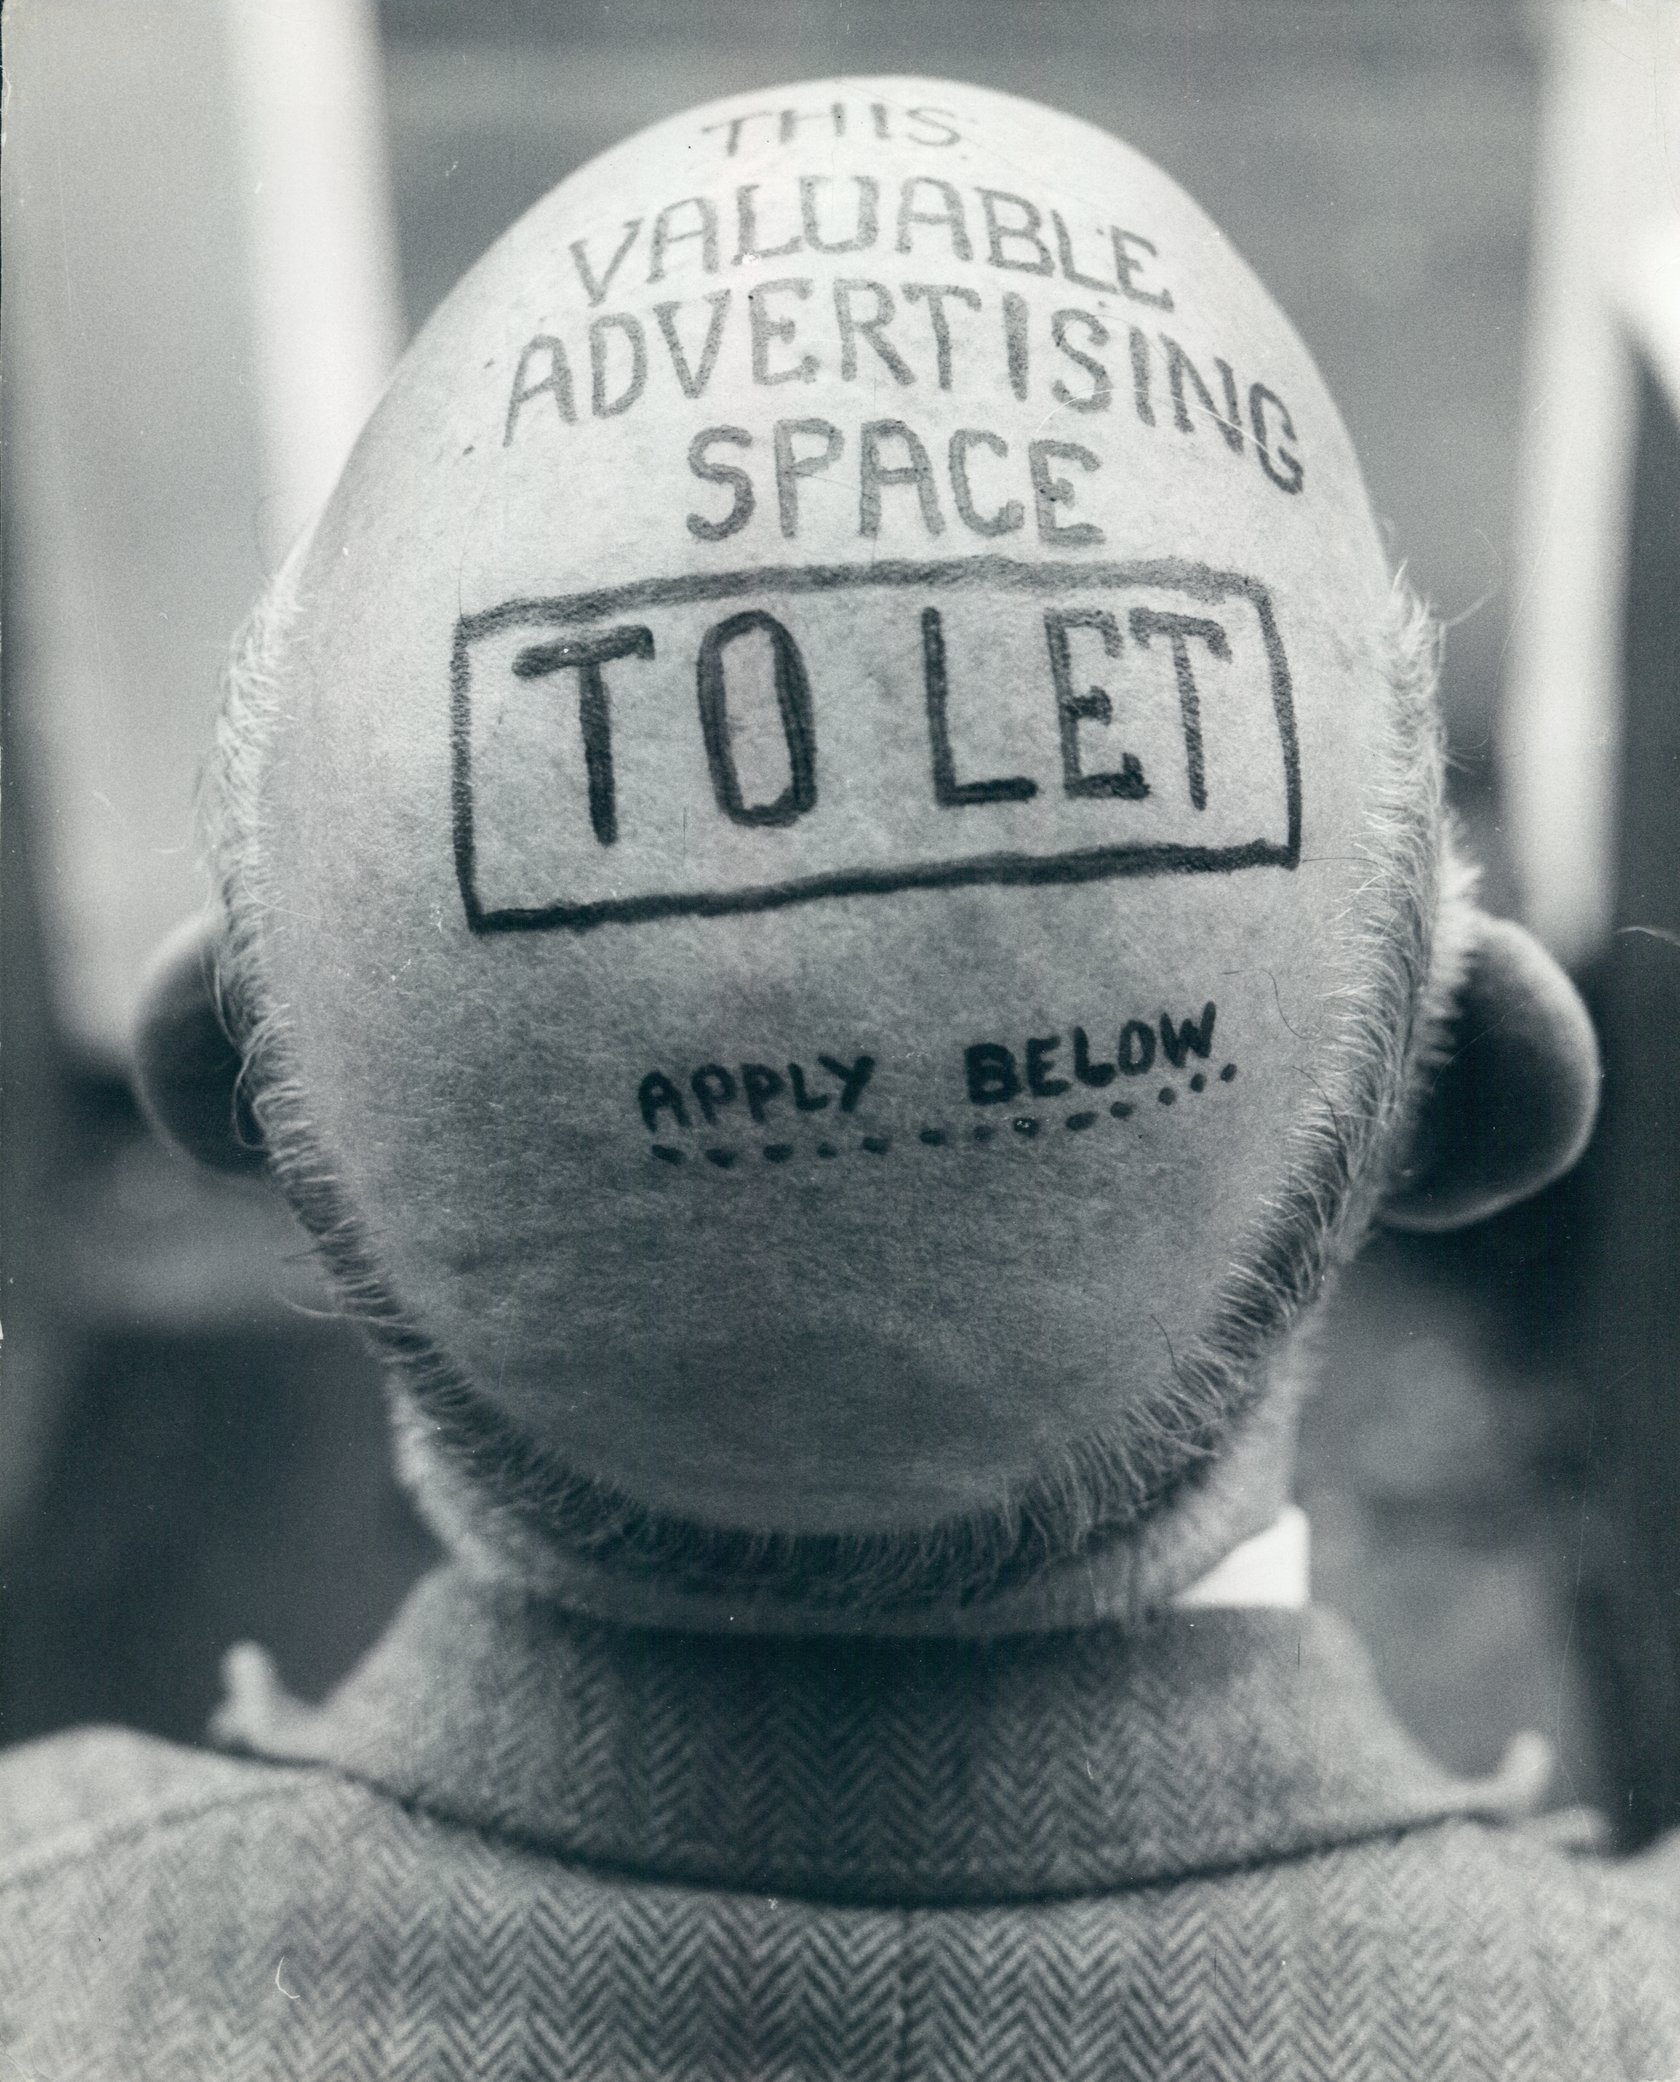 Photo Archiv Schweitzer: Glatze von oben mit Werbung "To let"